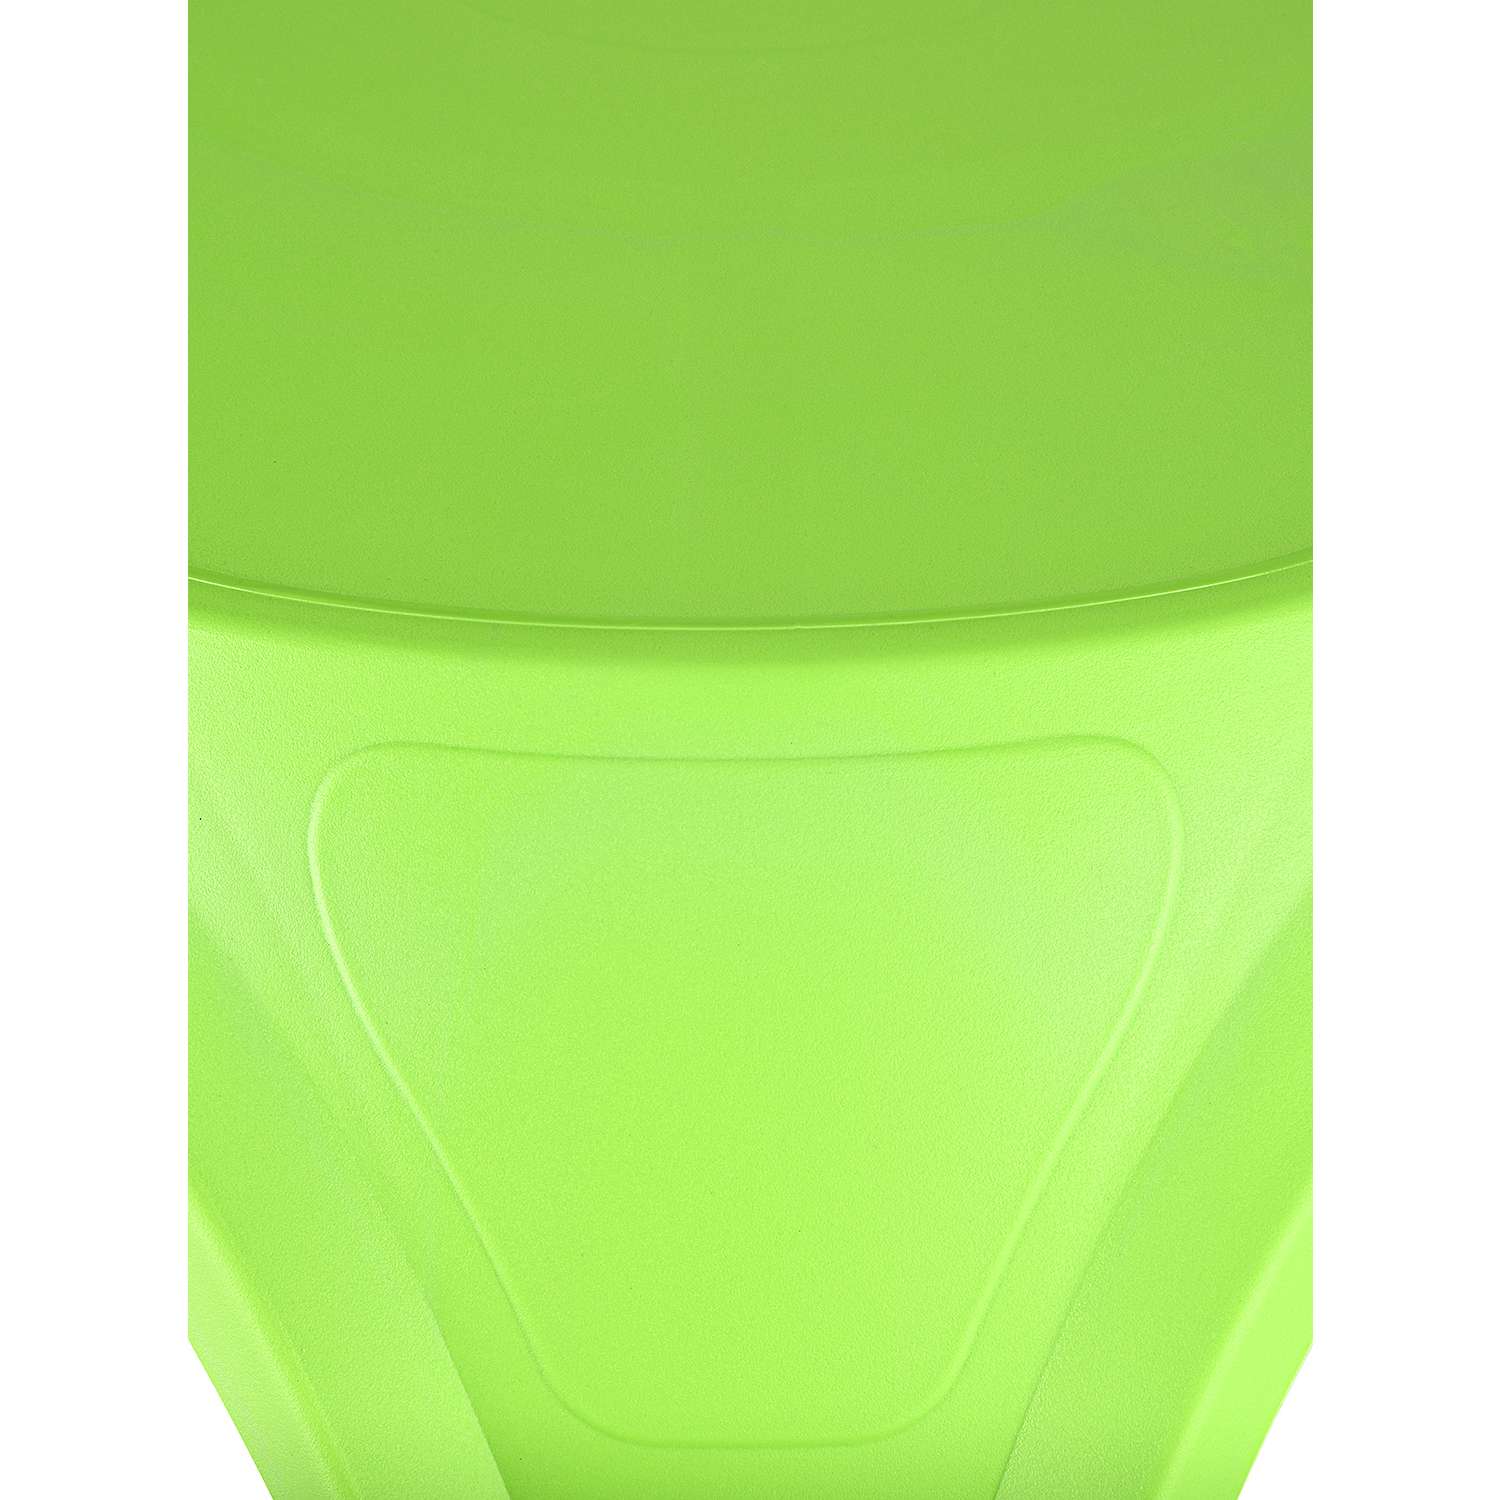 Стол десткий KETT-UP ОСЬМИНОЖКА пластиковый зеленый - фото 3